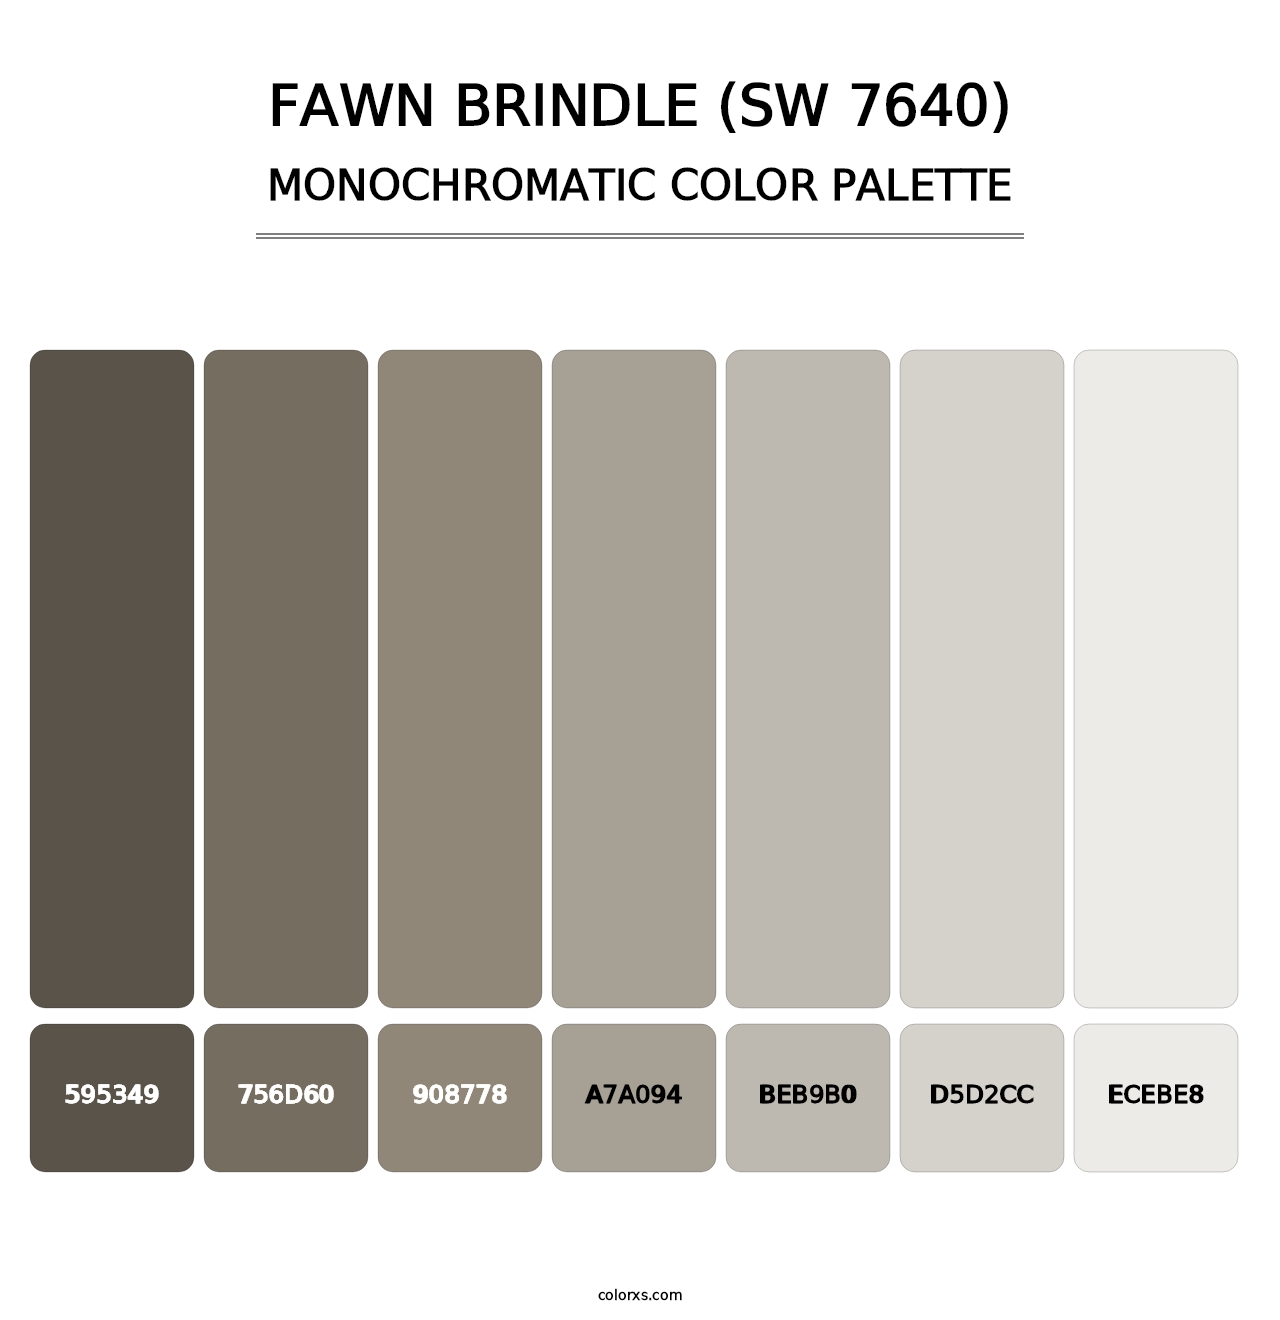 Fawn Brindle (SW 7640) - Monochromatic Color Palette